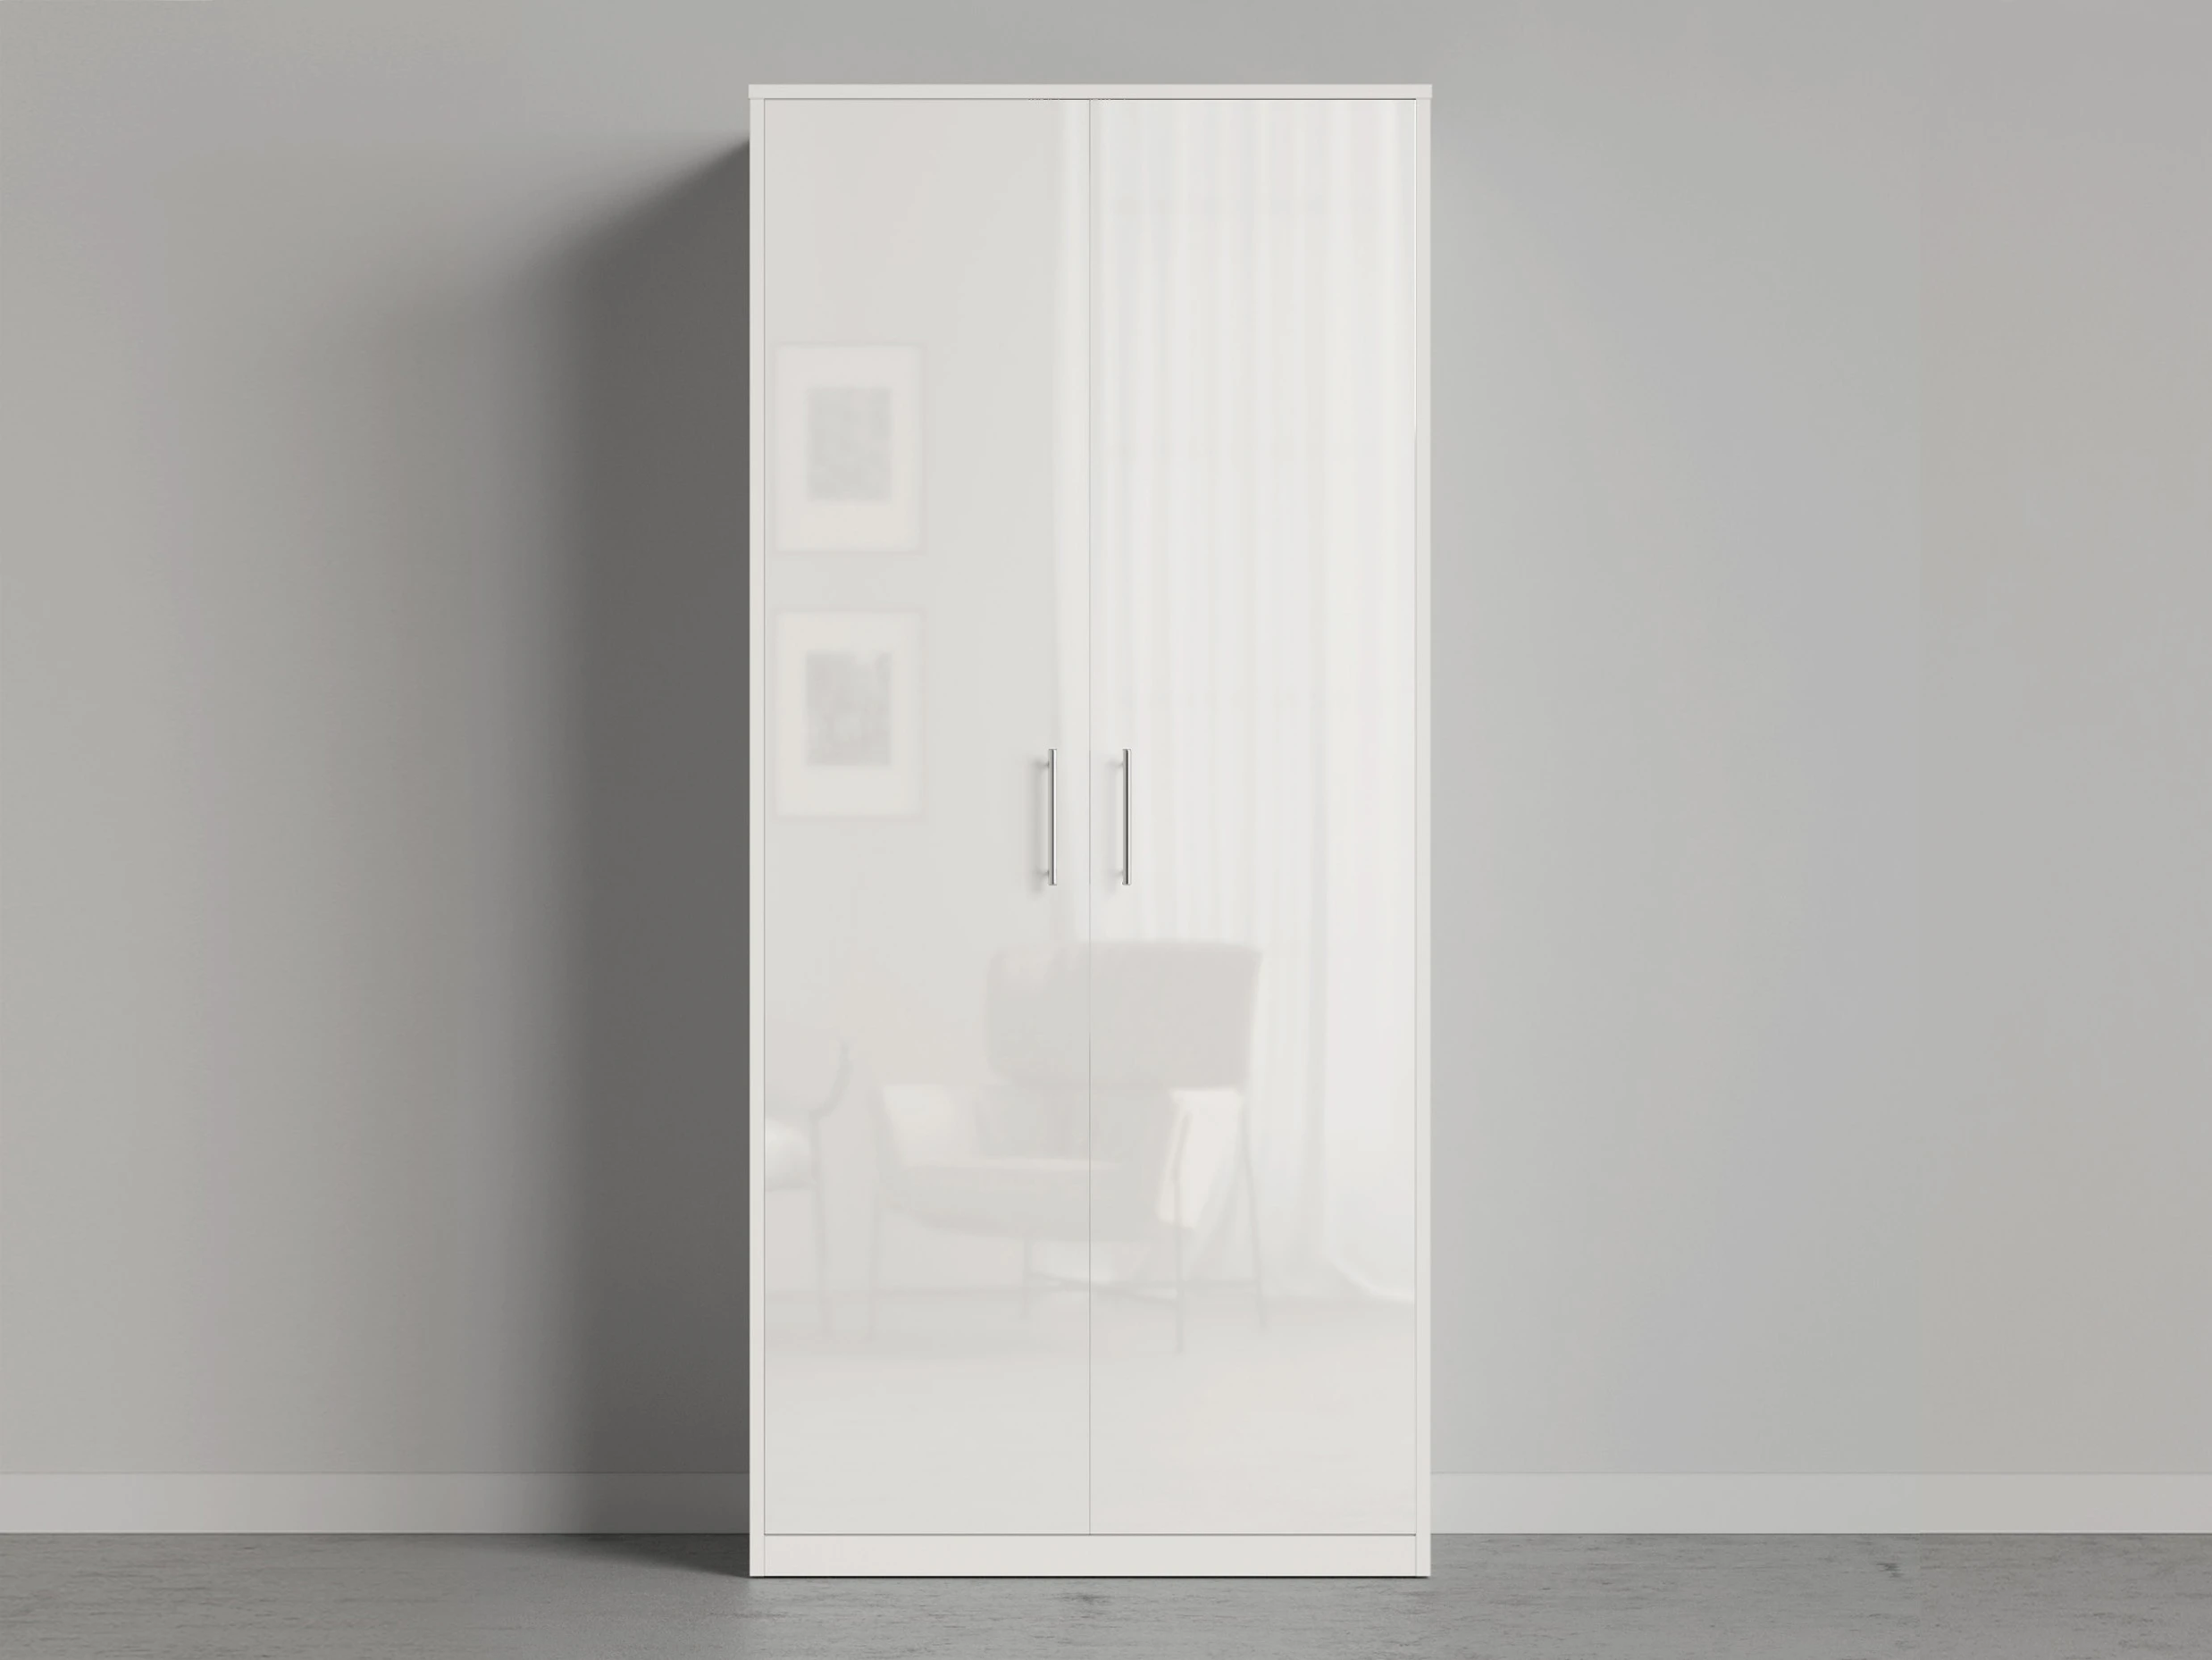 1 Closet 100x220 cm (Standard 45 cm depth) White / White Gloss